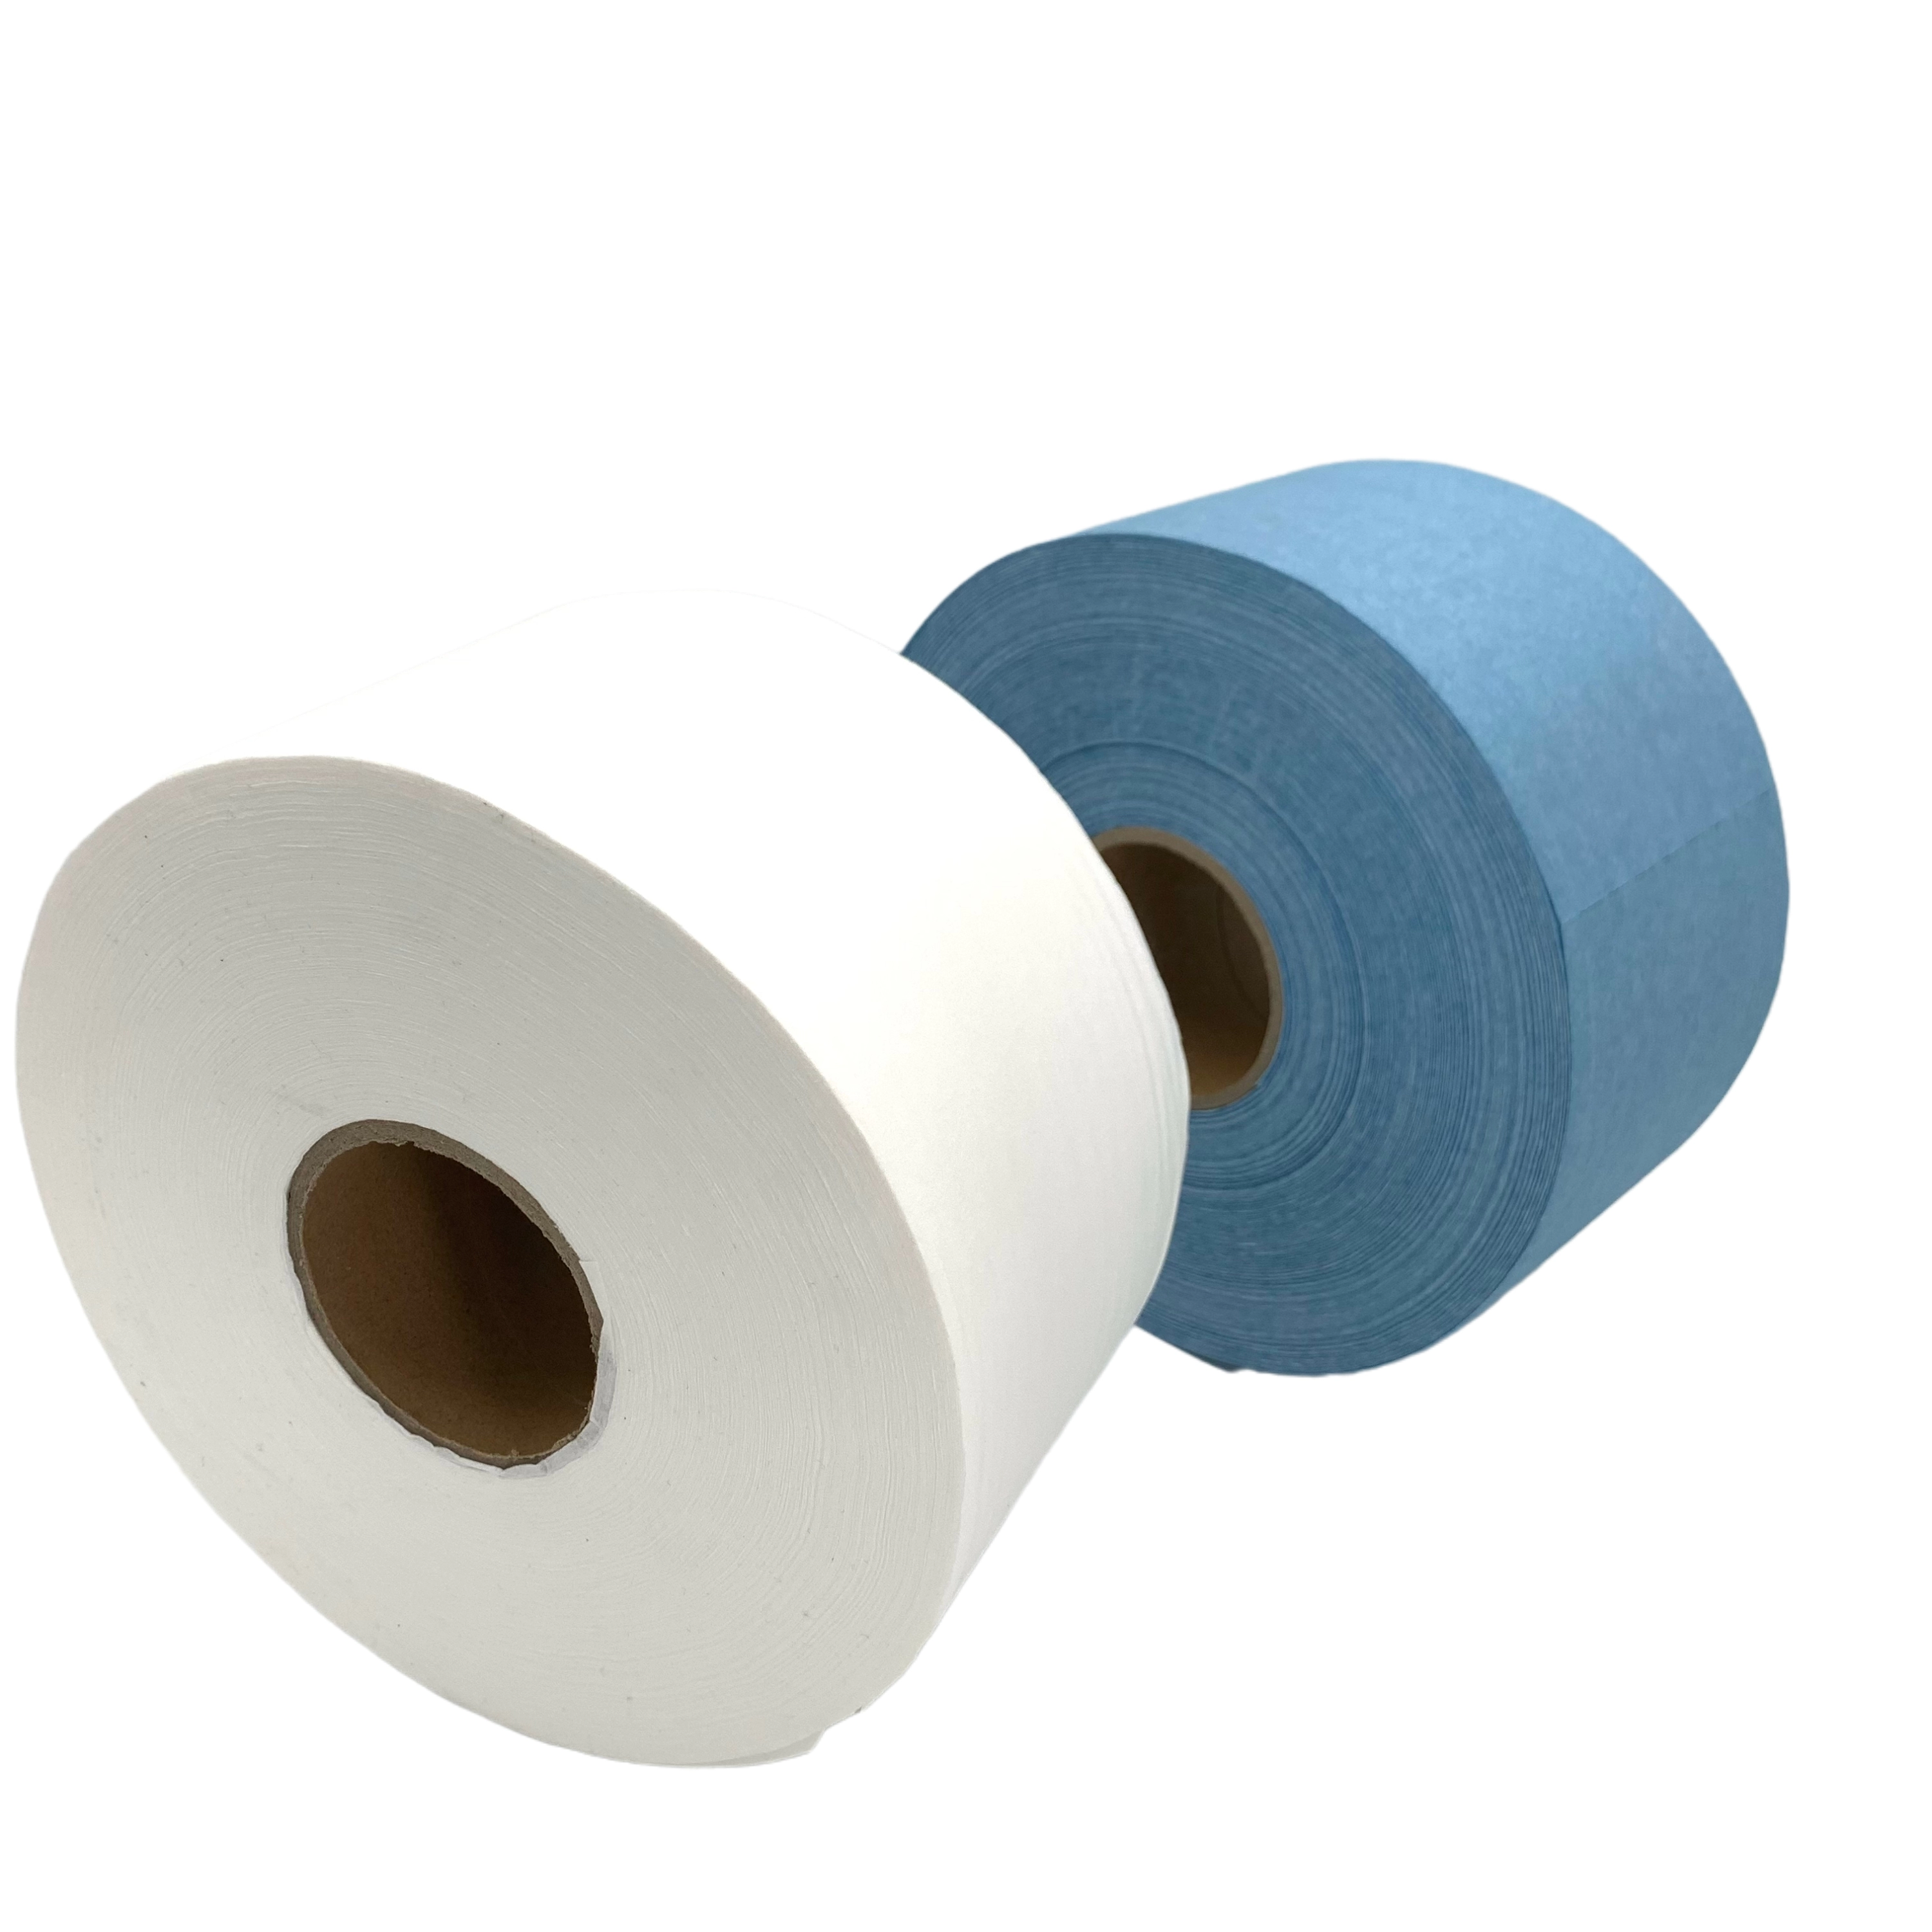 JD-6550 Big Roll Clean Room Roll Wiper Industrial Paper Roll Manufacturer Άμεση πώληση για πολλούς τρόπους χρήσης